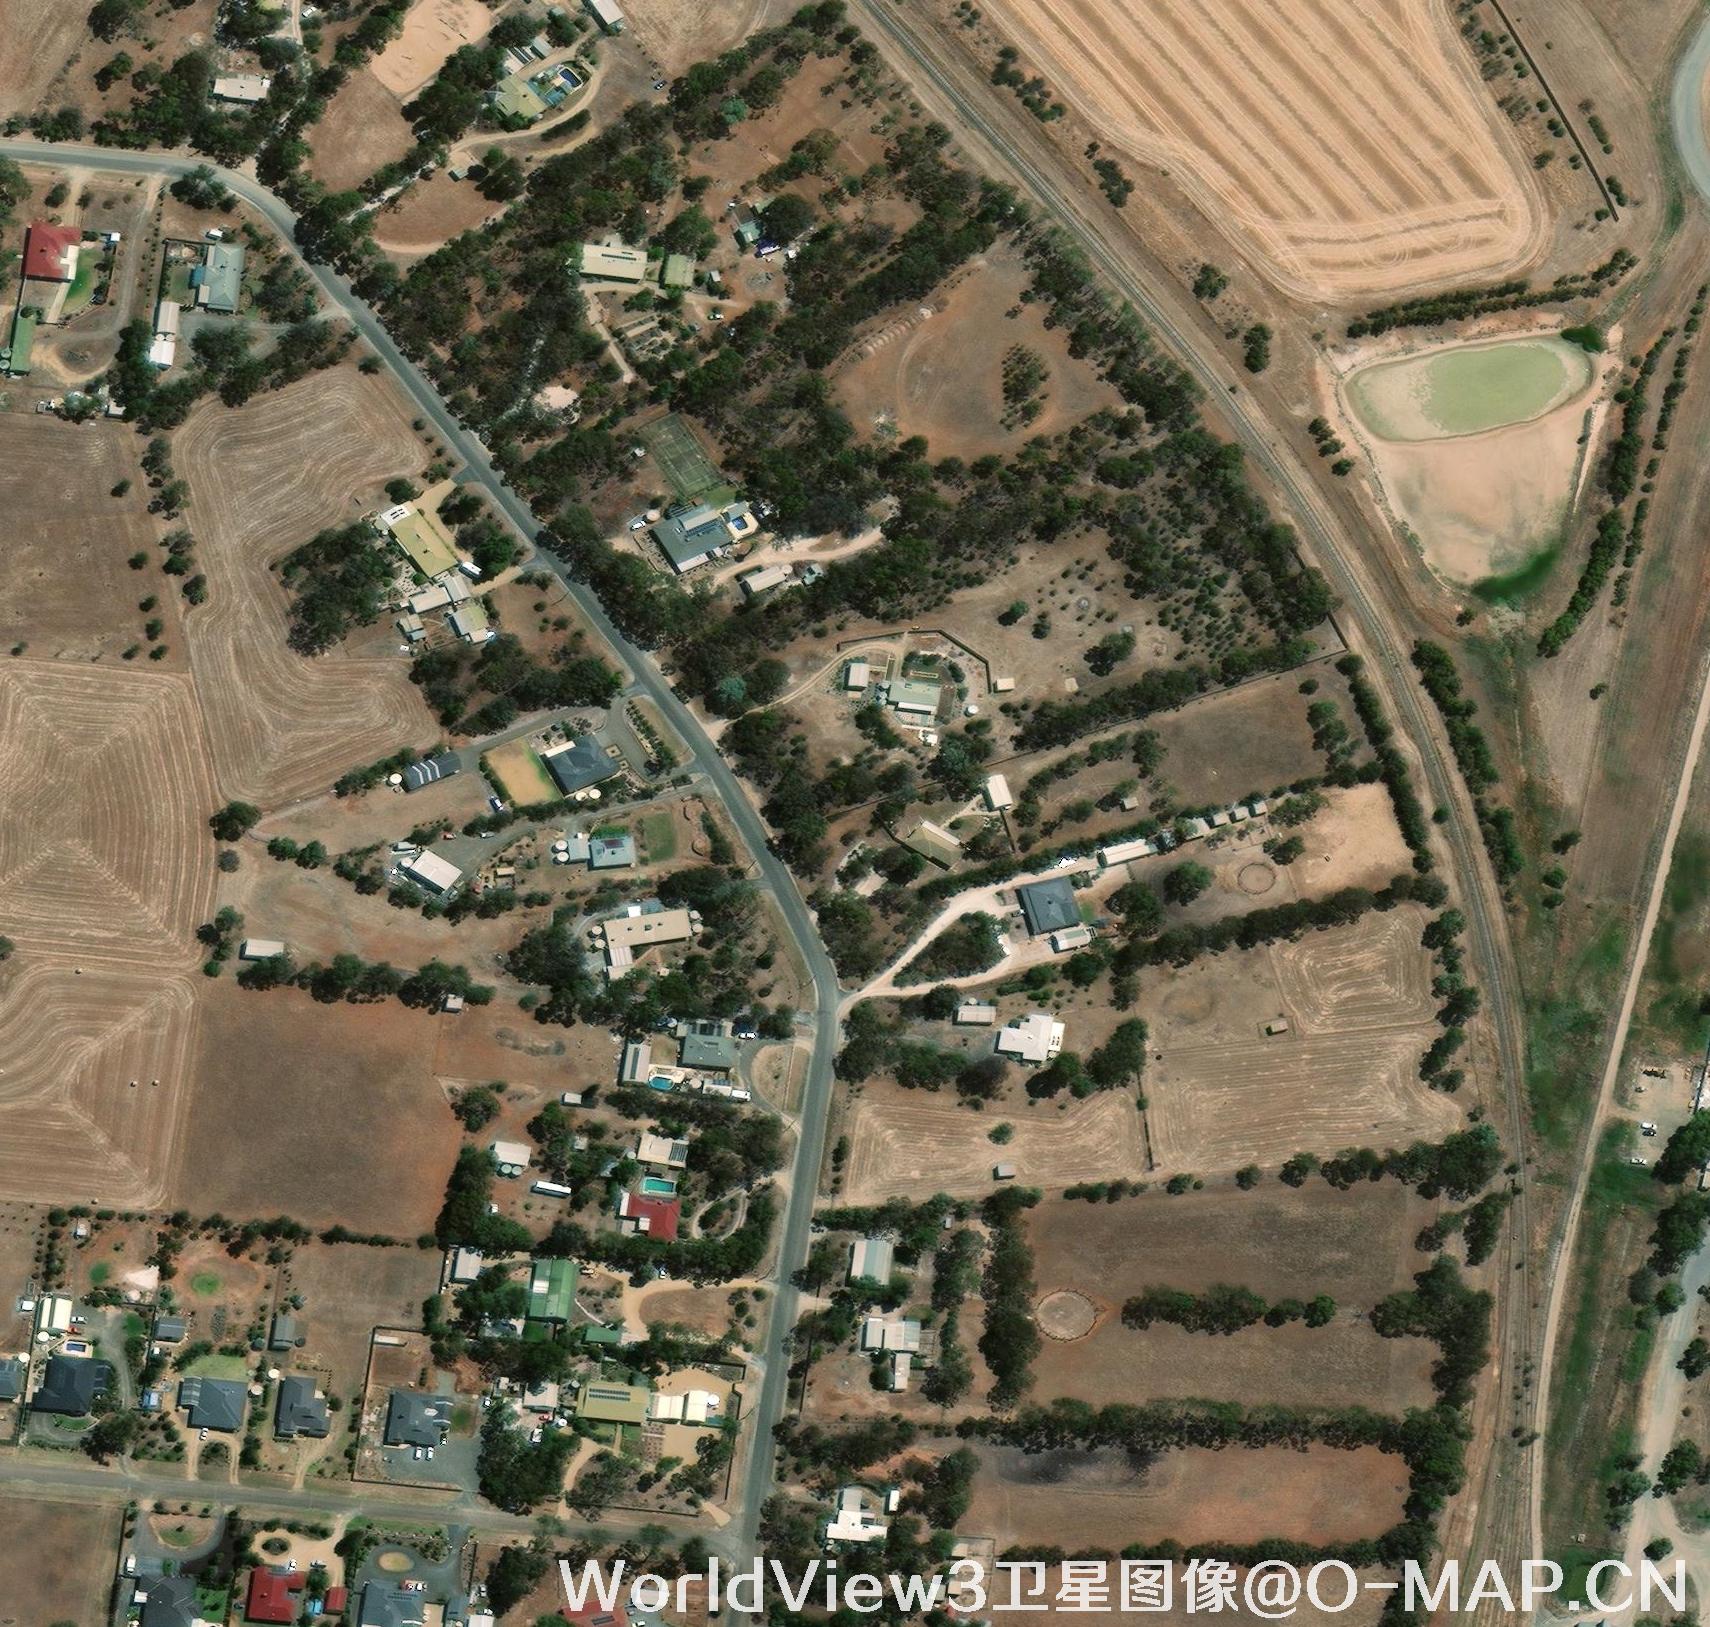 WorldView3卫星拍摄的城镇影像图